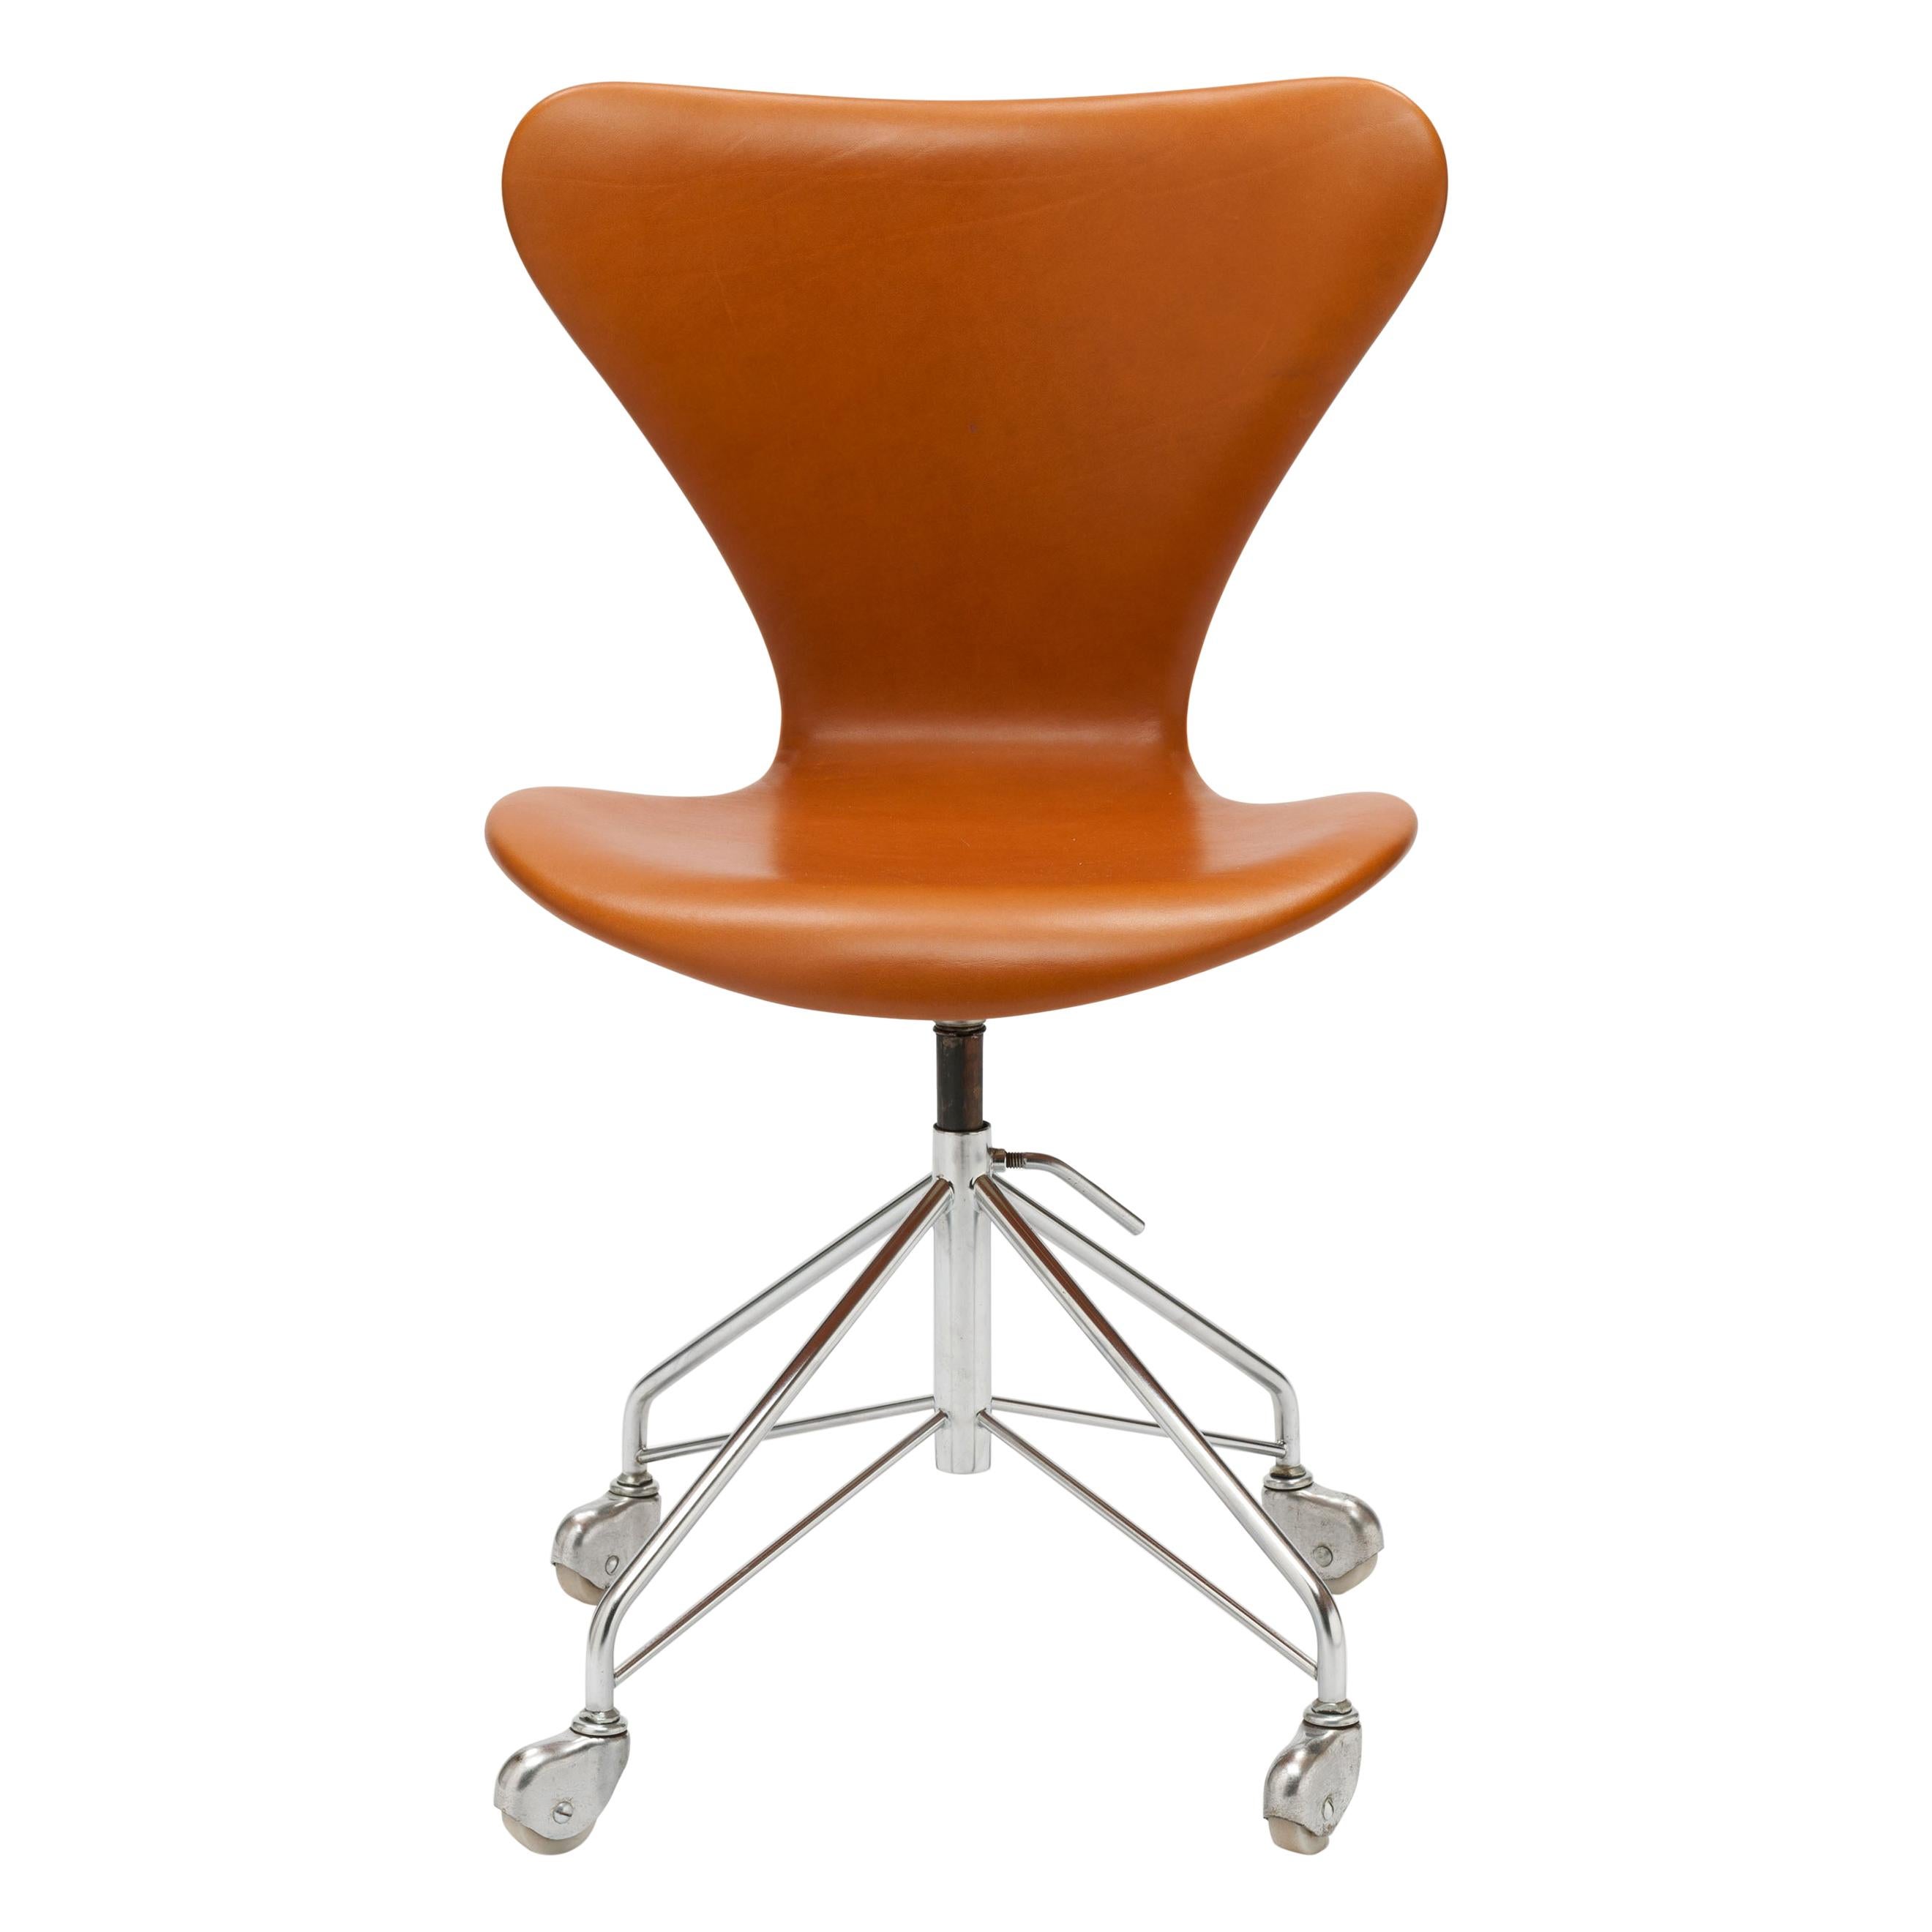 Early Cognac Leather Arne Jacobsen 3117 Desk Swivel Chair by Fritz Hansen